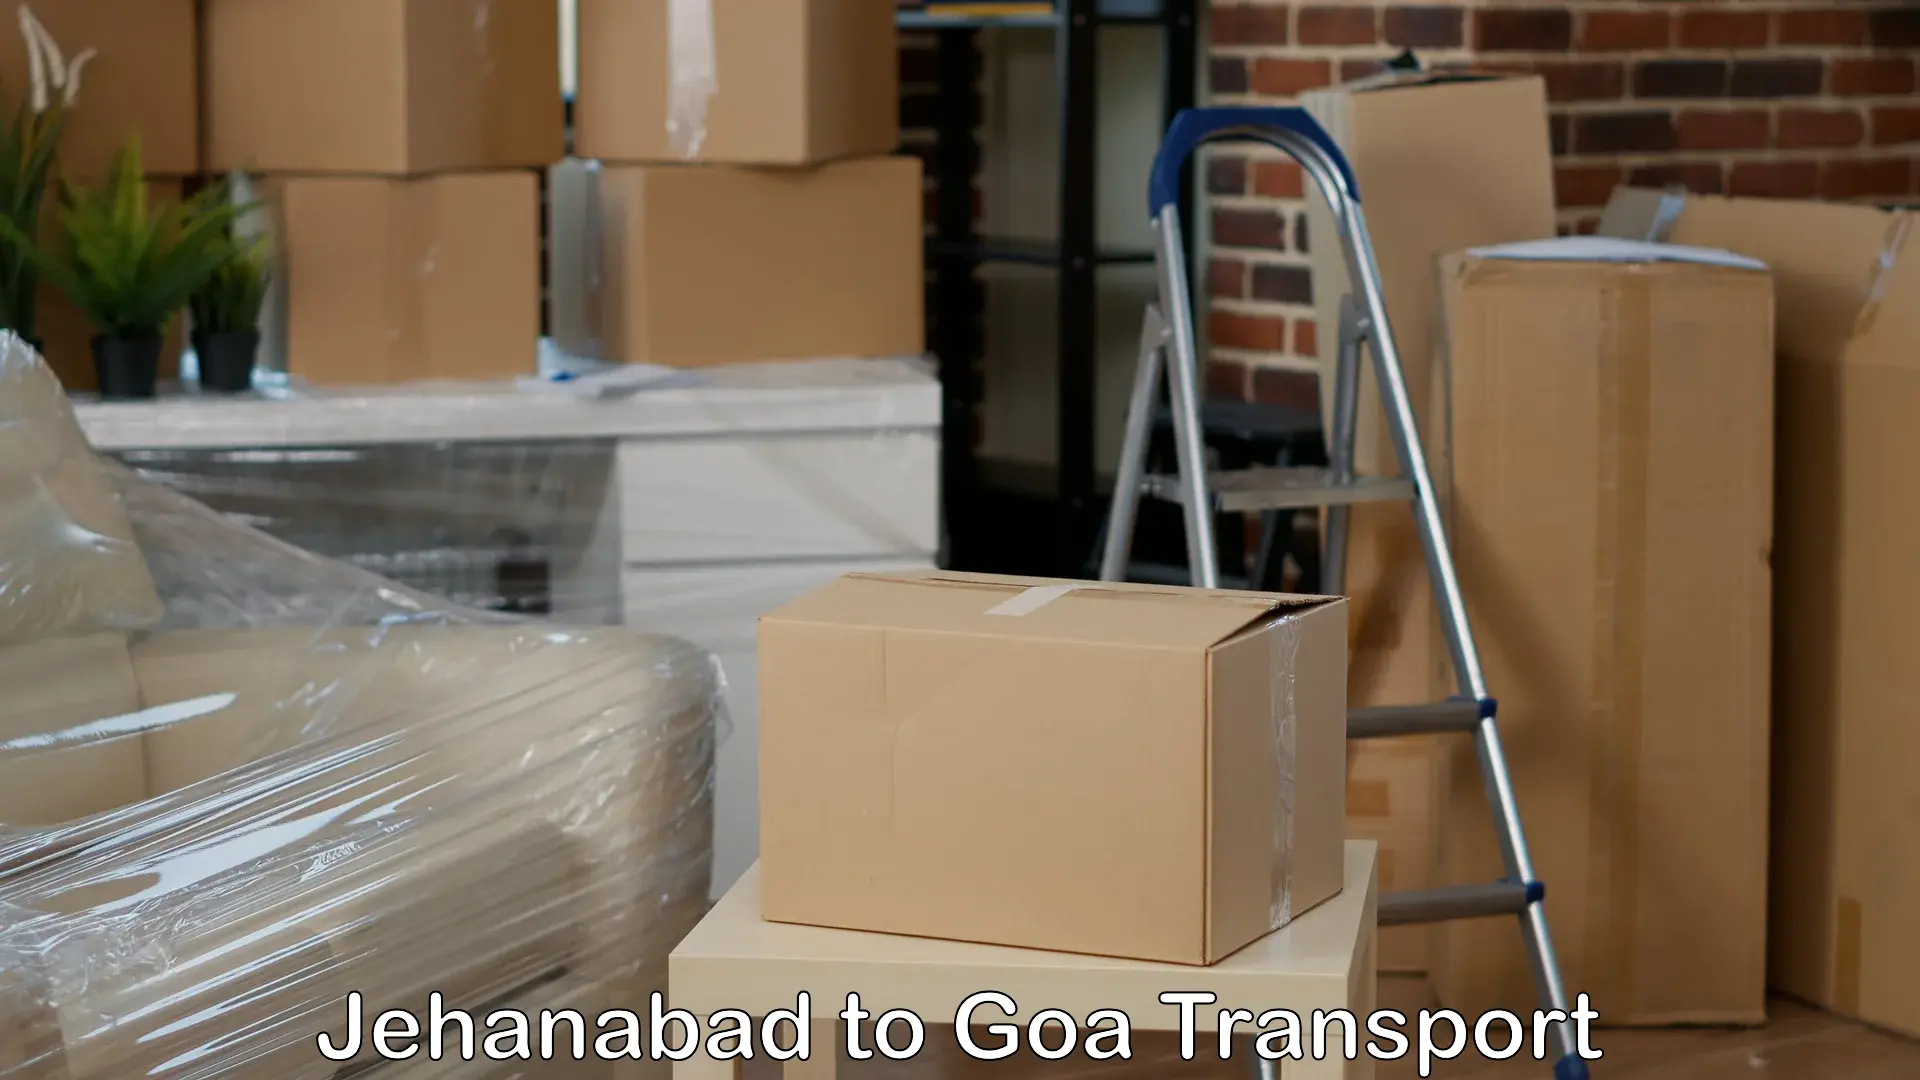 Door to door transport services Jehanabad to South Goa